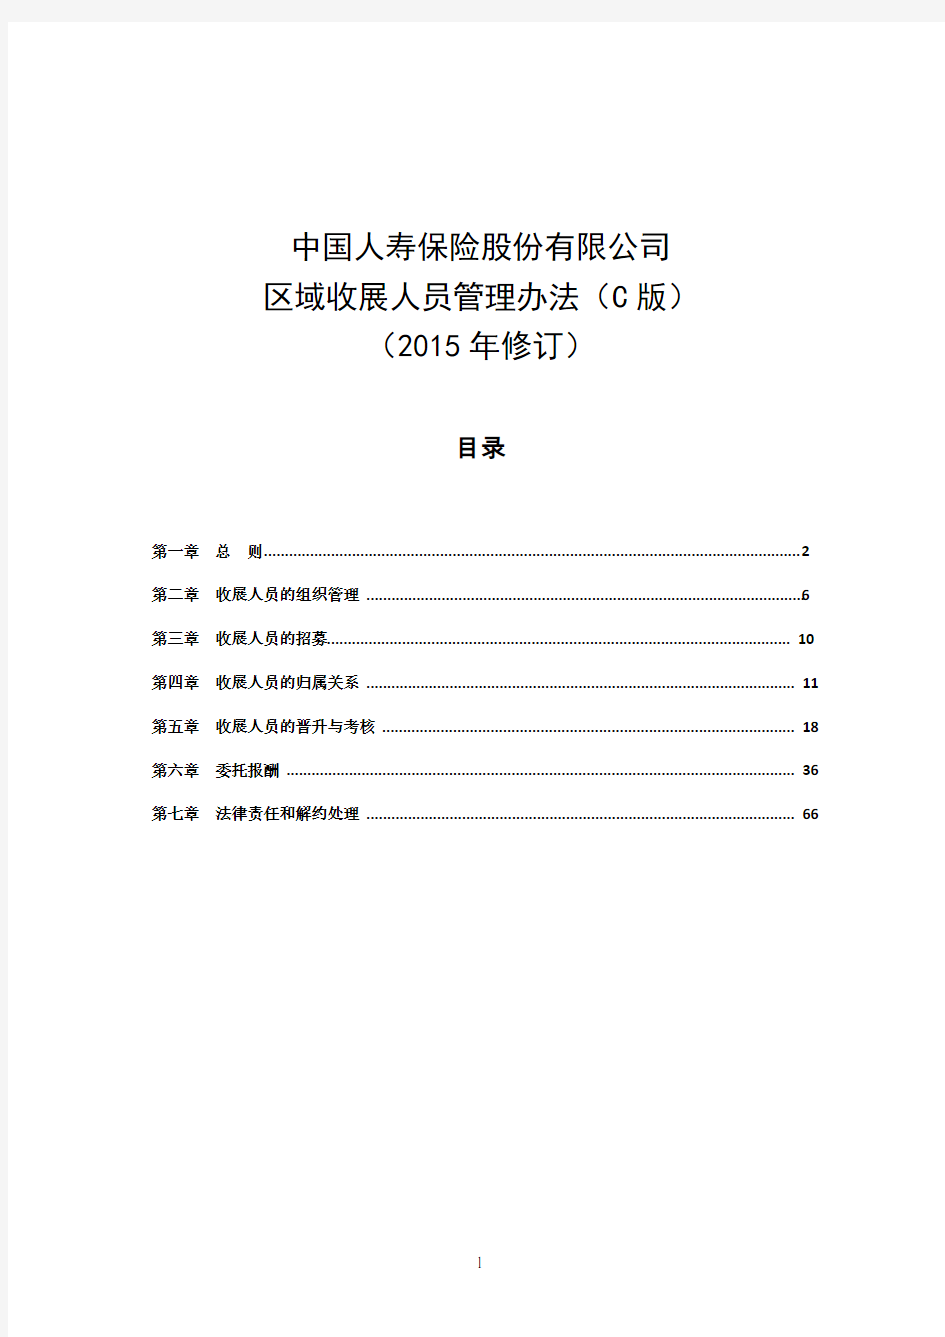 中国人寿区域收展人员管理办法2015版(D版)